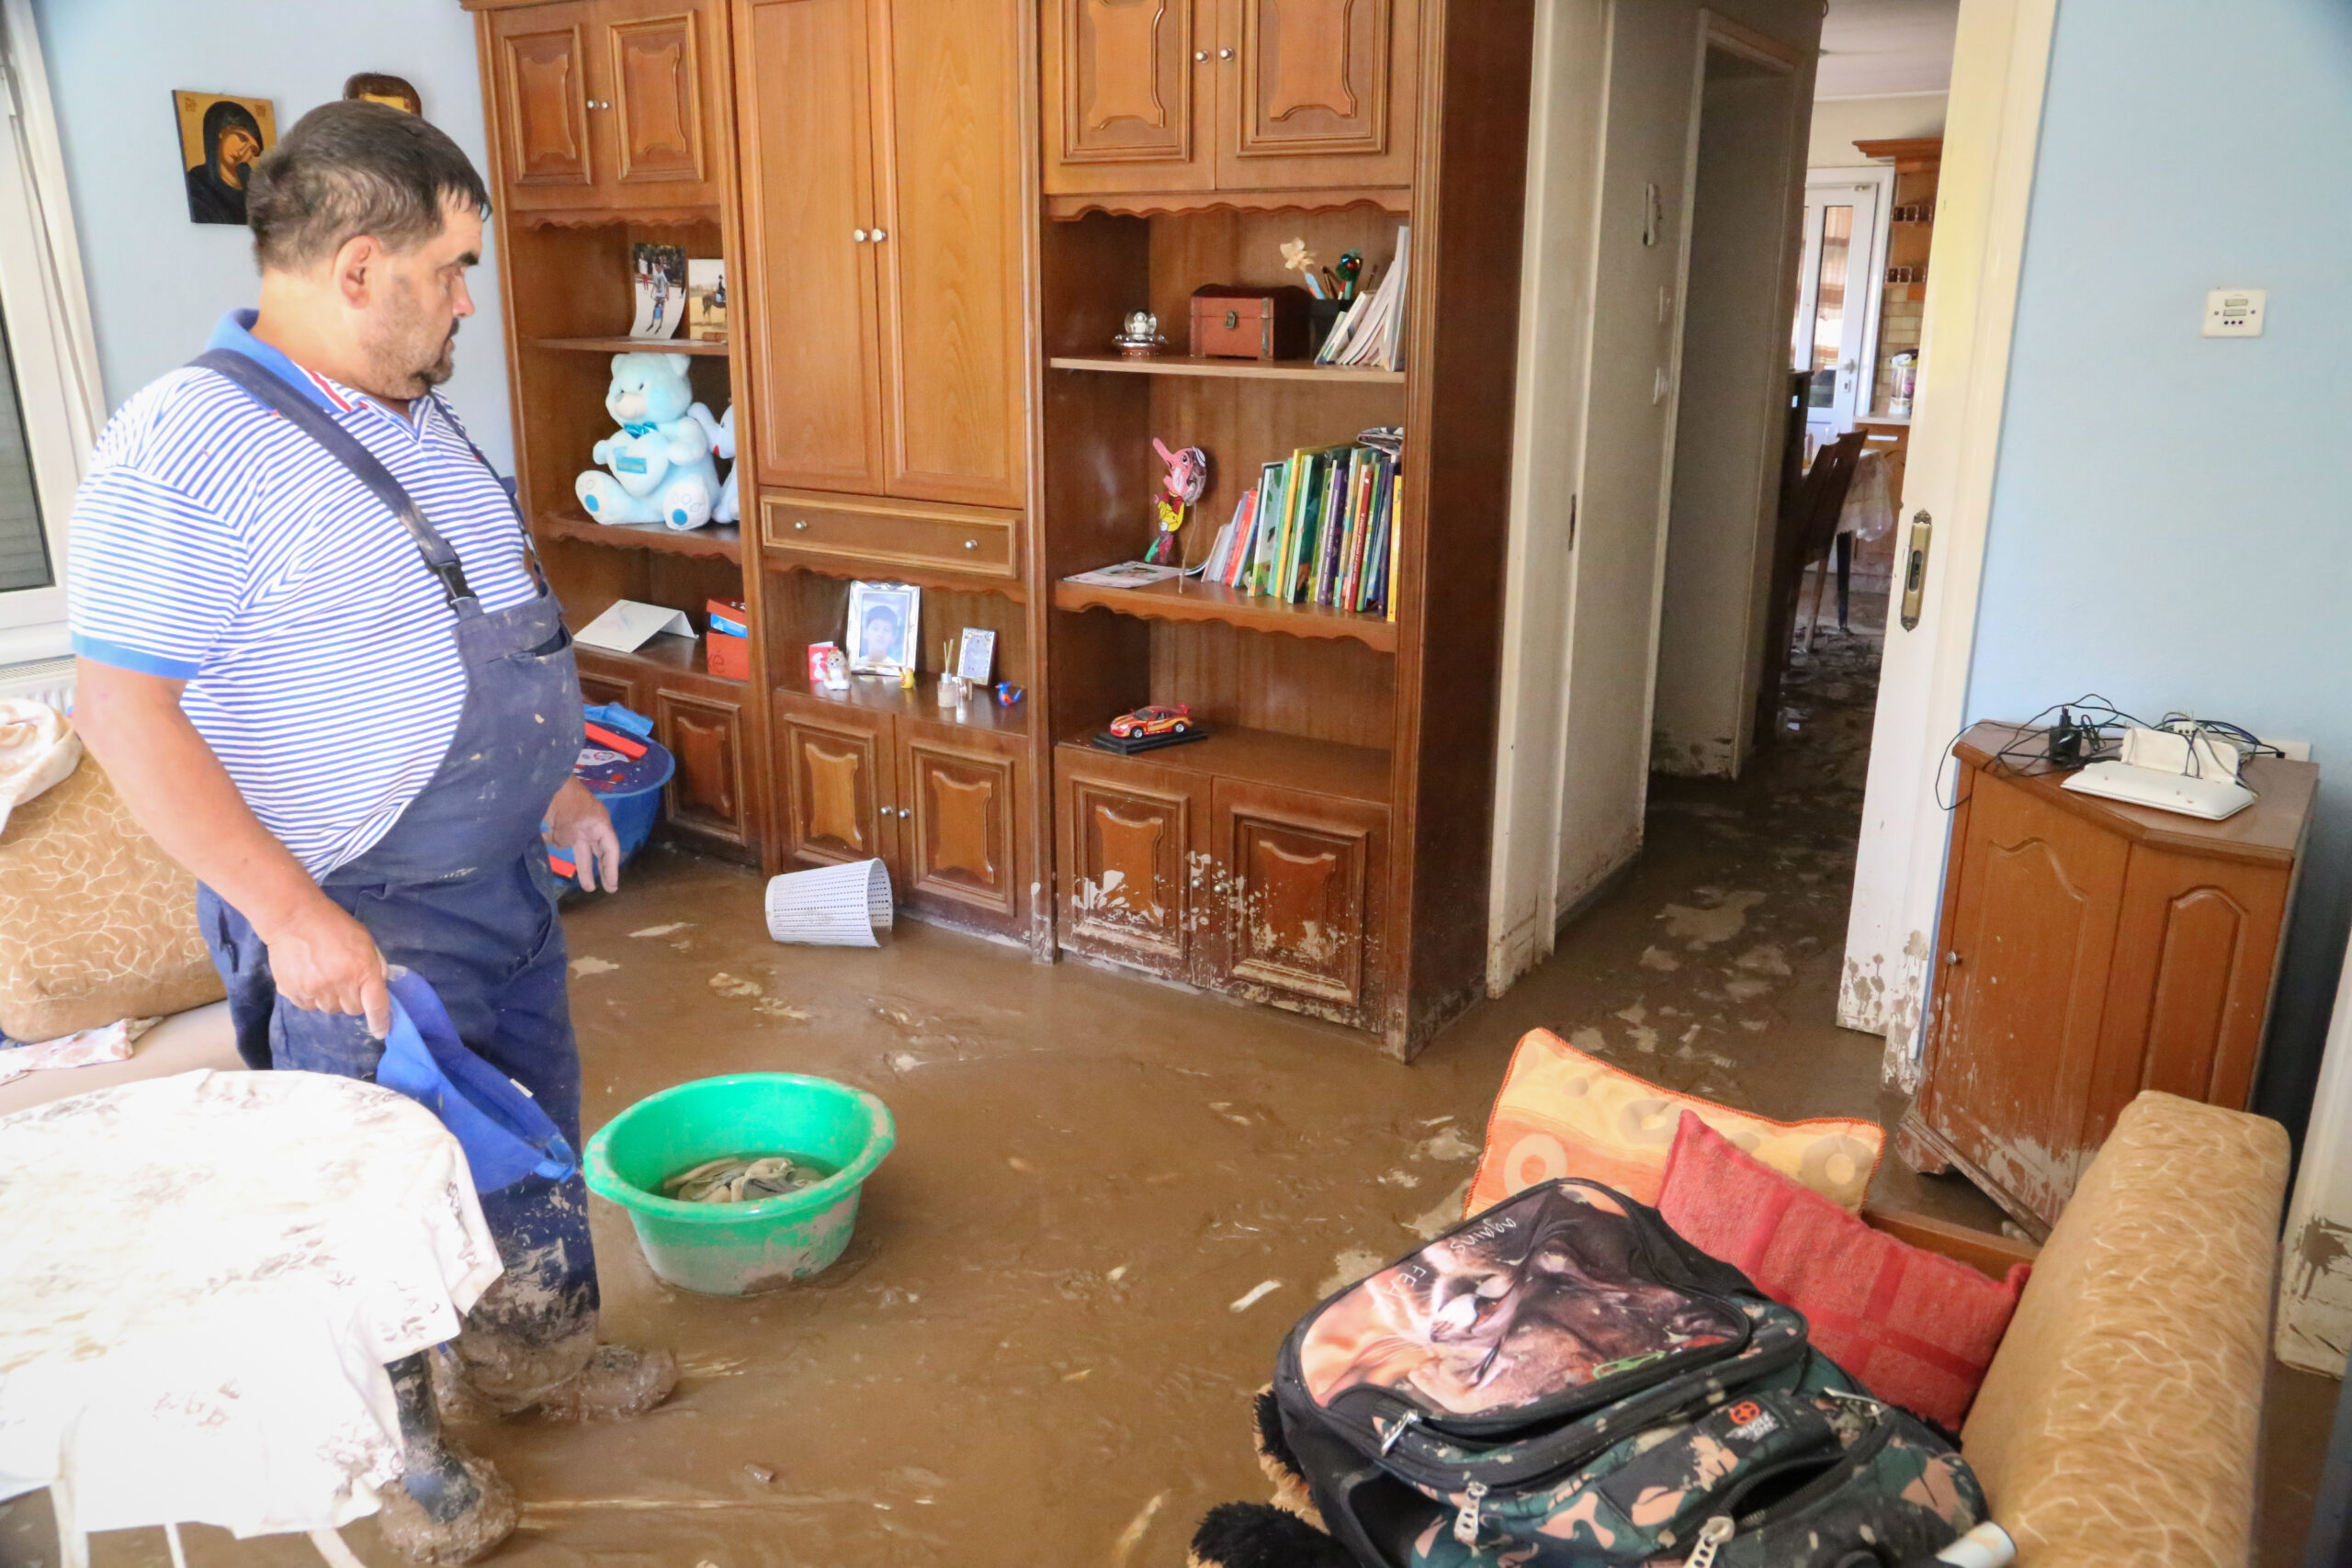 Ν. Γιαννακοπούλου: Οι συνεχείς βιβλικές καταστροφές αποδεικνύουν ότι η κυβέρνηση έχει αποτύχει να προσαρμόσει το κράτος σε αυτές τις νέες συνθήκες